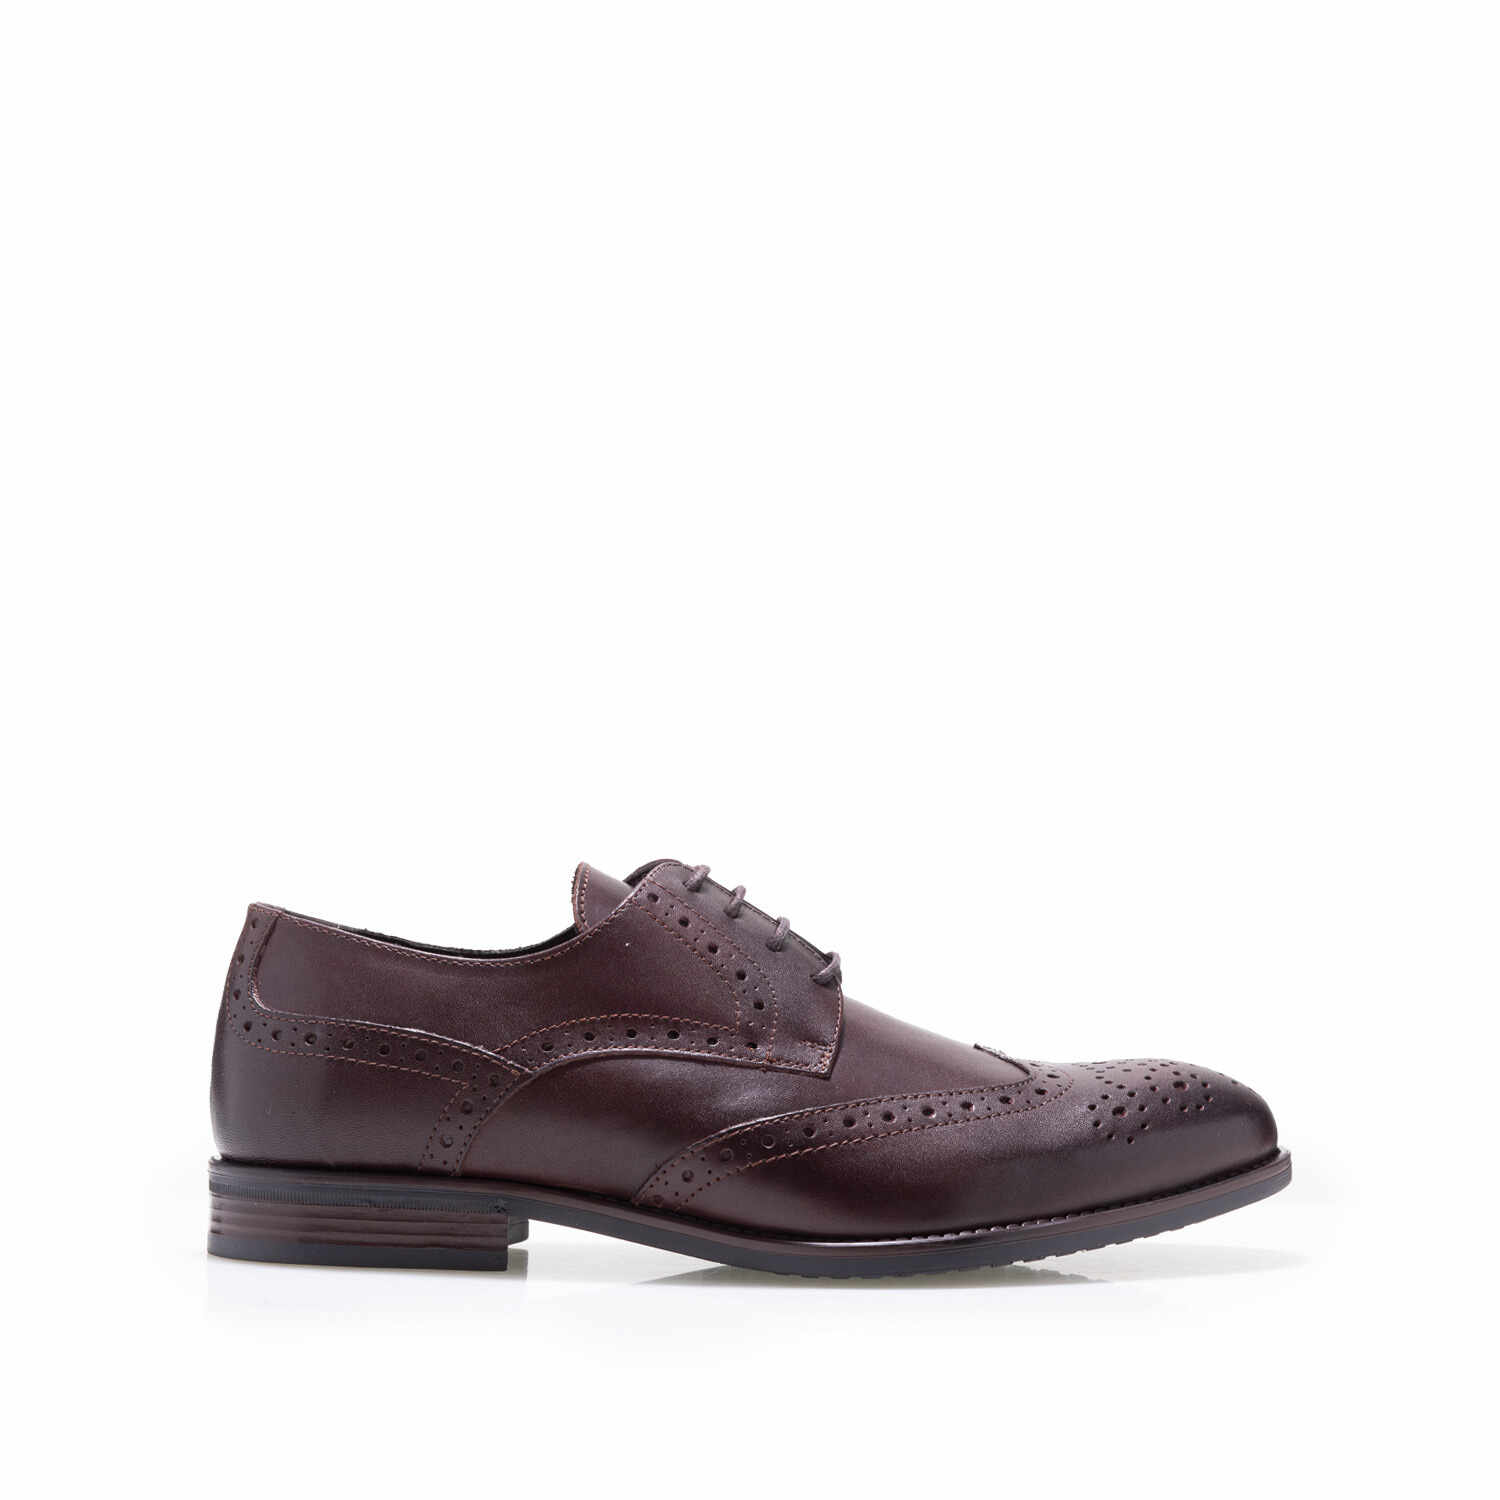 Pantofi eleganţi bărbaţi din piele naturală, Leofex - 655 Red Wood Box